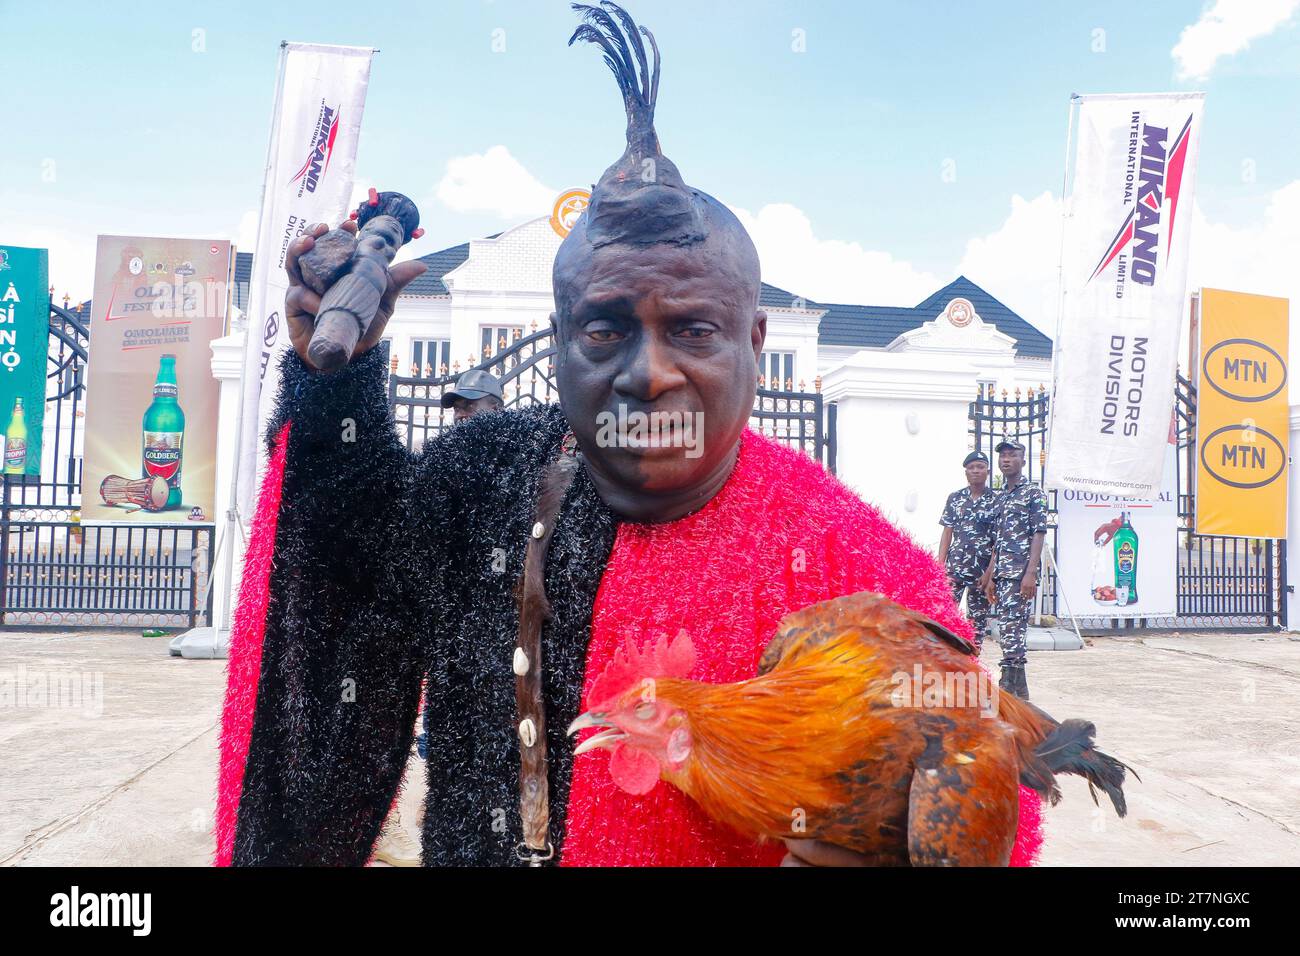 Ein ESU (Geistgott), der vor dem Palast des Monarchen während des Olojo Festivals in Ile-Ife im Bundesstaat Osun ausgestellt wurde. Das Olojo-Festival ist eine Feier von Ogun, dem Gott von Eisen, und erinnert an den Abstieg von Oduduwa zur Ile-Ife, die Feier des ersten Sonnenaufgangs, des ersten Nachmittags und der ersten Nacht der Schöpfung. Das Olojo-Festival ist eines der ältesten in Afrika, das im ganzen Yoruba-Land gefeiert wird. Es feiert den Beginn des ersten Tages der Existenz auf der Erde, wo der Monarch die heilige Krone trägt, die größere Bedeutung bei der Olojo-Feier in Nigeria hat. Stockfoto